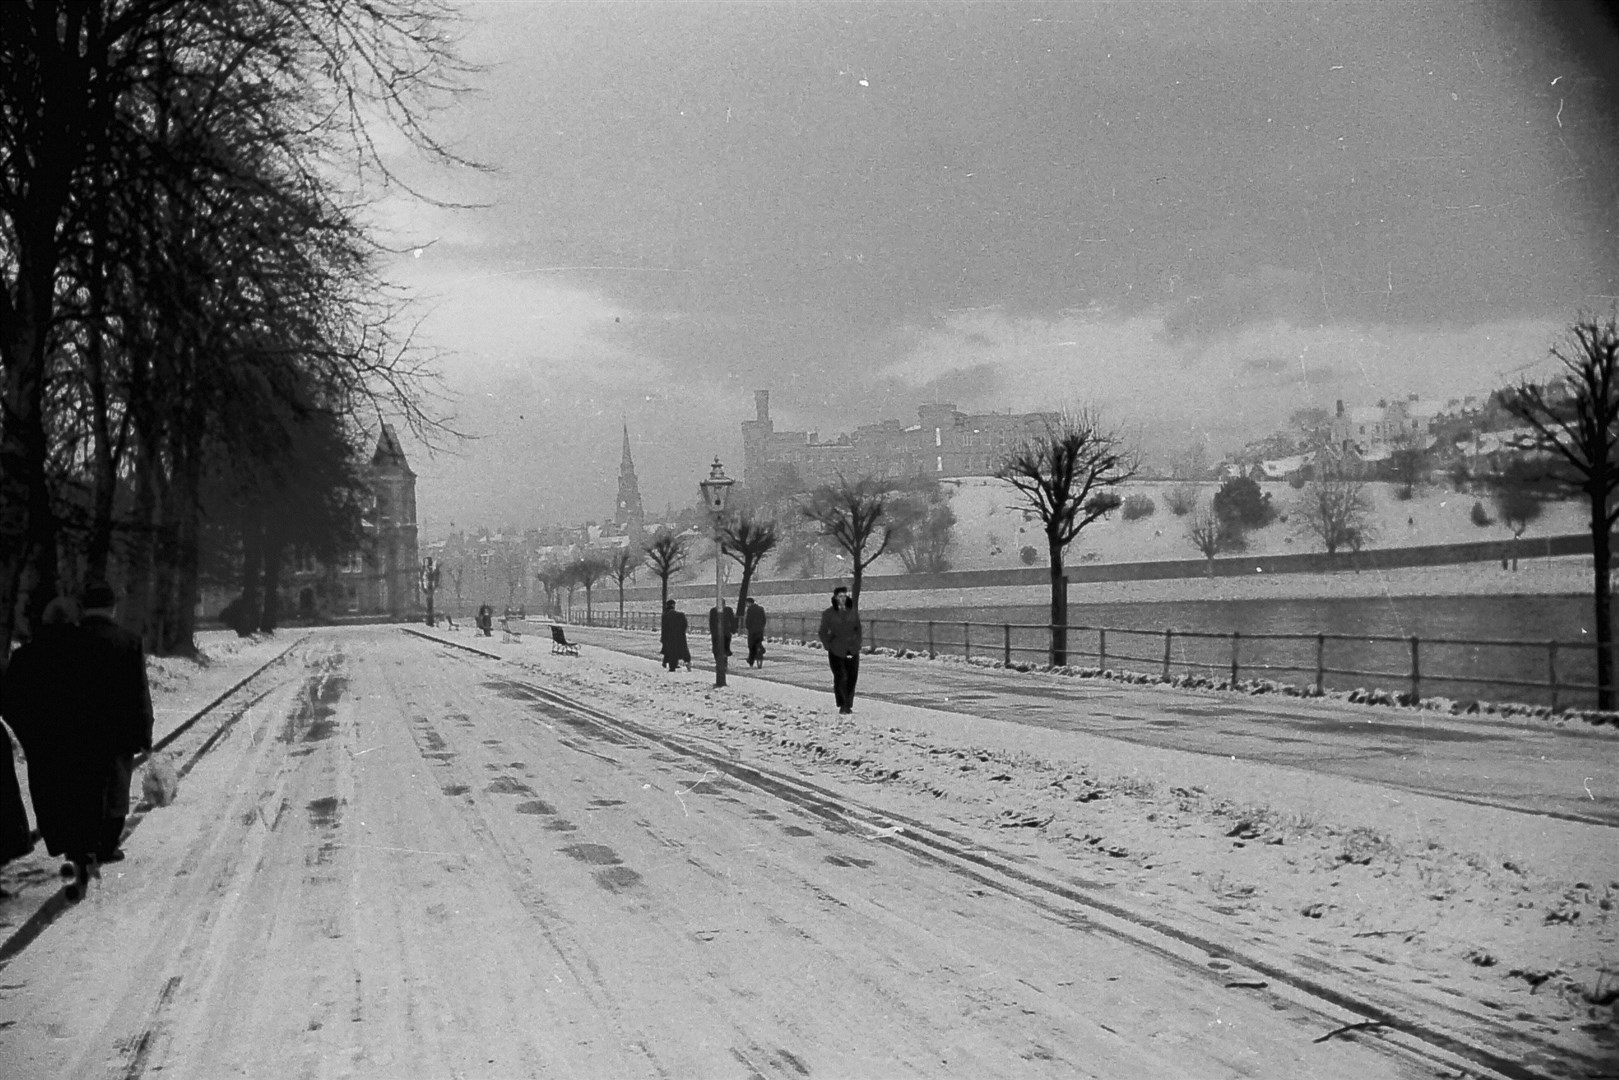 A snowy scene on Ness Walk.